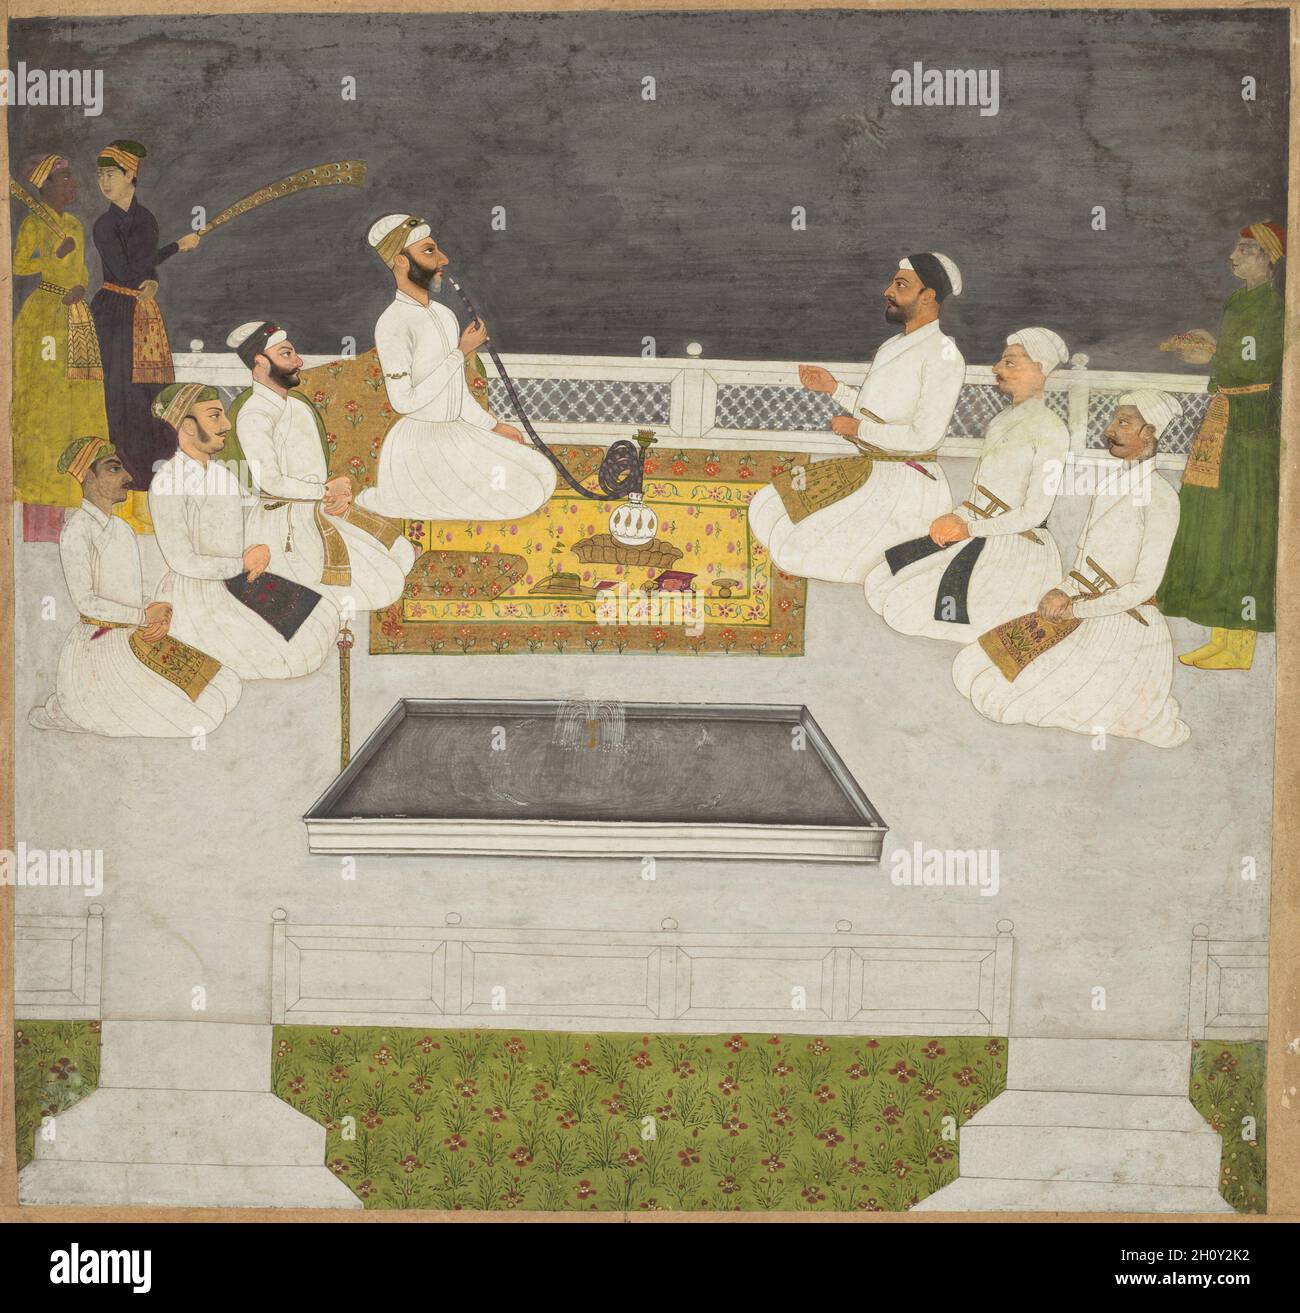 Husain Ali Khan entreteniendo a sus hermanos (los hermanos Sayyid), c. 1712-19. India, Dinastía Mughal (1526-1756). Acuarela opaca y oro sobre papel; página: 30,8 x 30,5 cm (12 1/8 x 12 pulg.). El astuto oligarca imperial que fumaba el hookah y sus hermanos gobernaron el gobierno de Mughal después de la muerte del emperador Alamgir en 1707 hasta el ascenso del emperador Muhammad Shah en 1719. Eran reyes despiadados y egoíosos que causaron los asesinatos y las adhesiones de seis miembros diferentes de la familia real al trono de Mughal en Delhi. Los dos asistentes detrás de él intercambian una mirada preocupada, y t Foto de stock